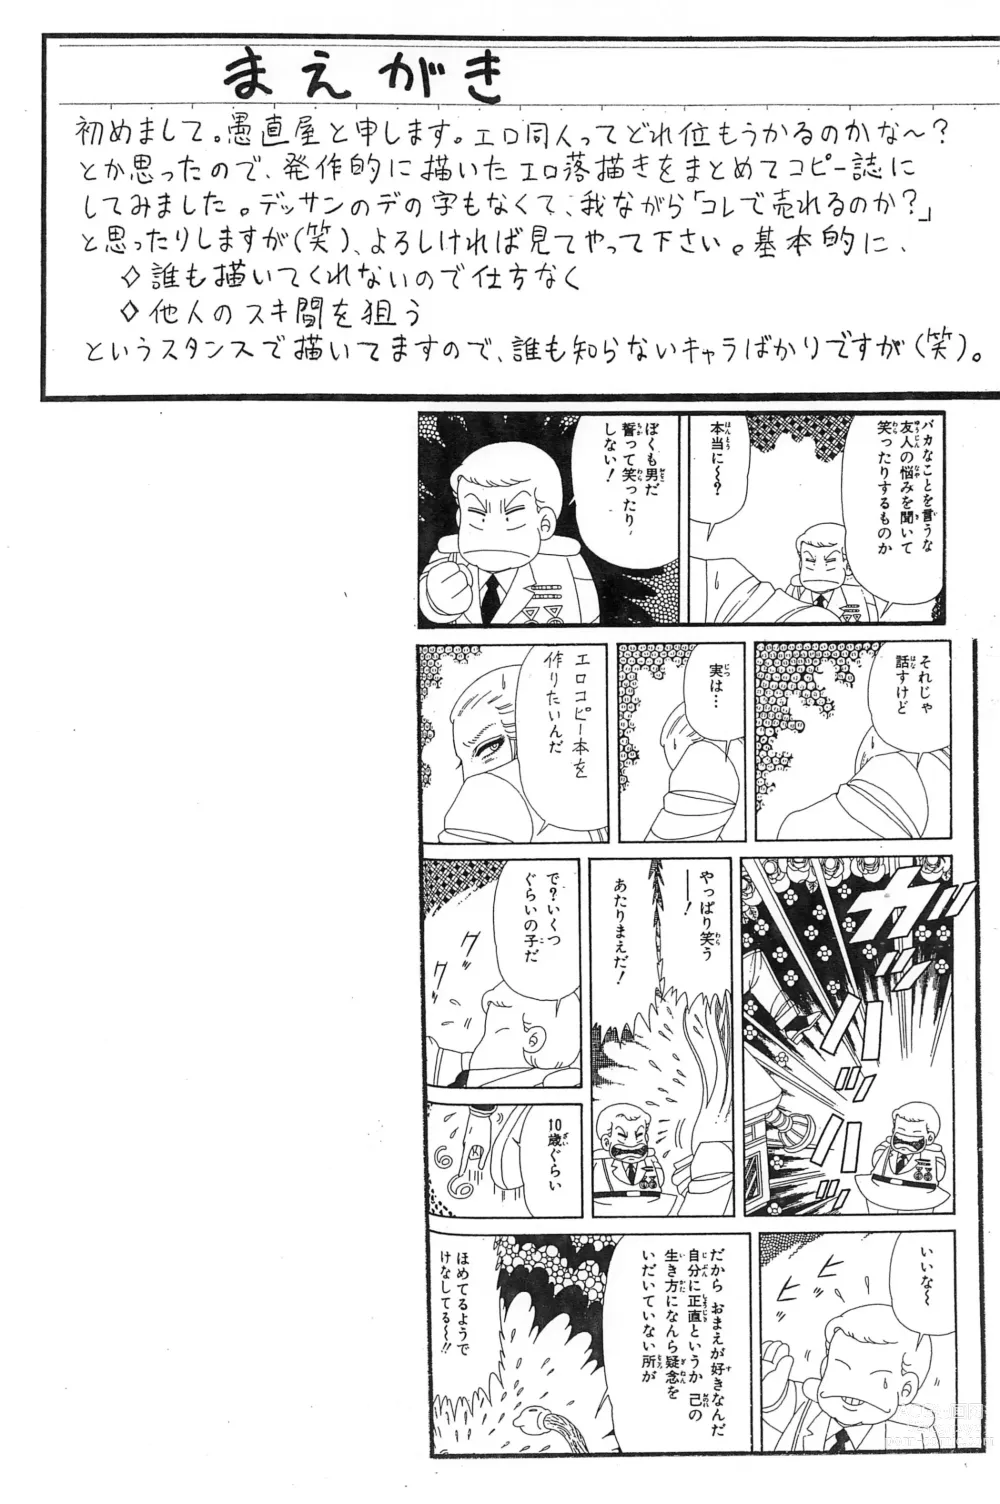 Page 2 of doujinshi Guchokuya Daiichigou